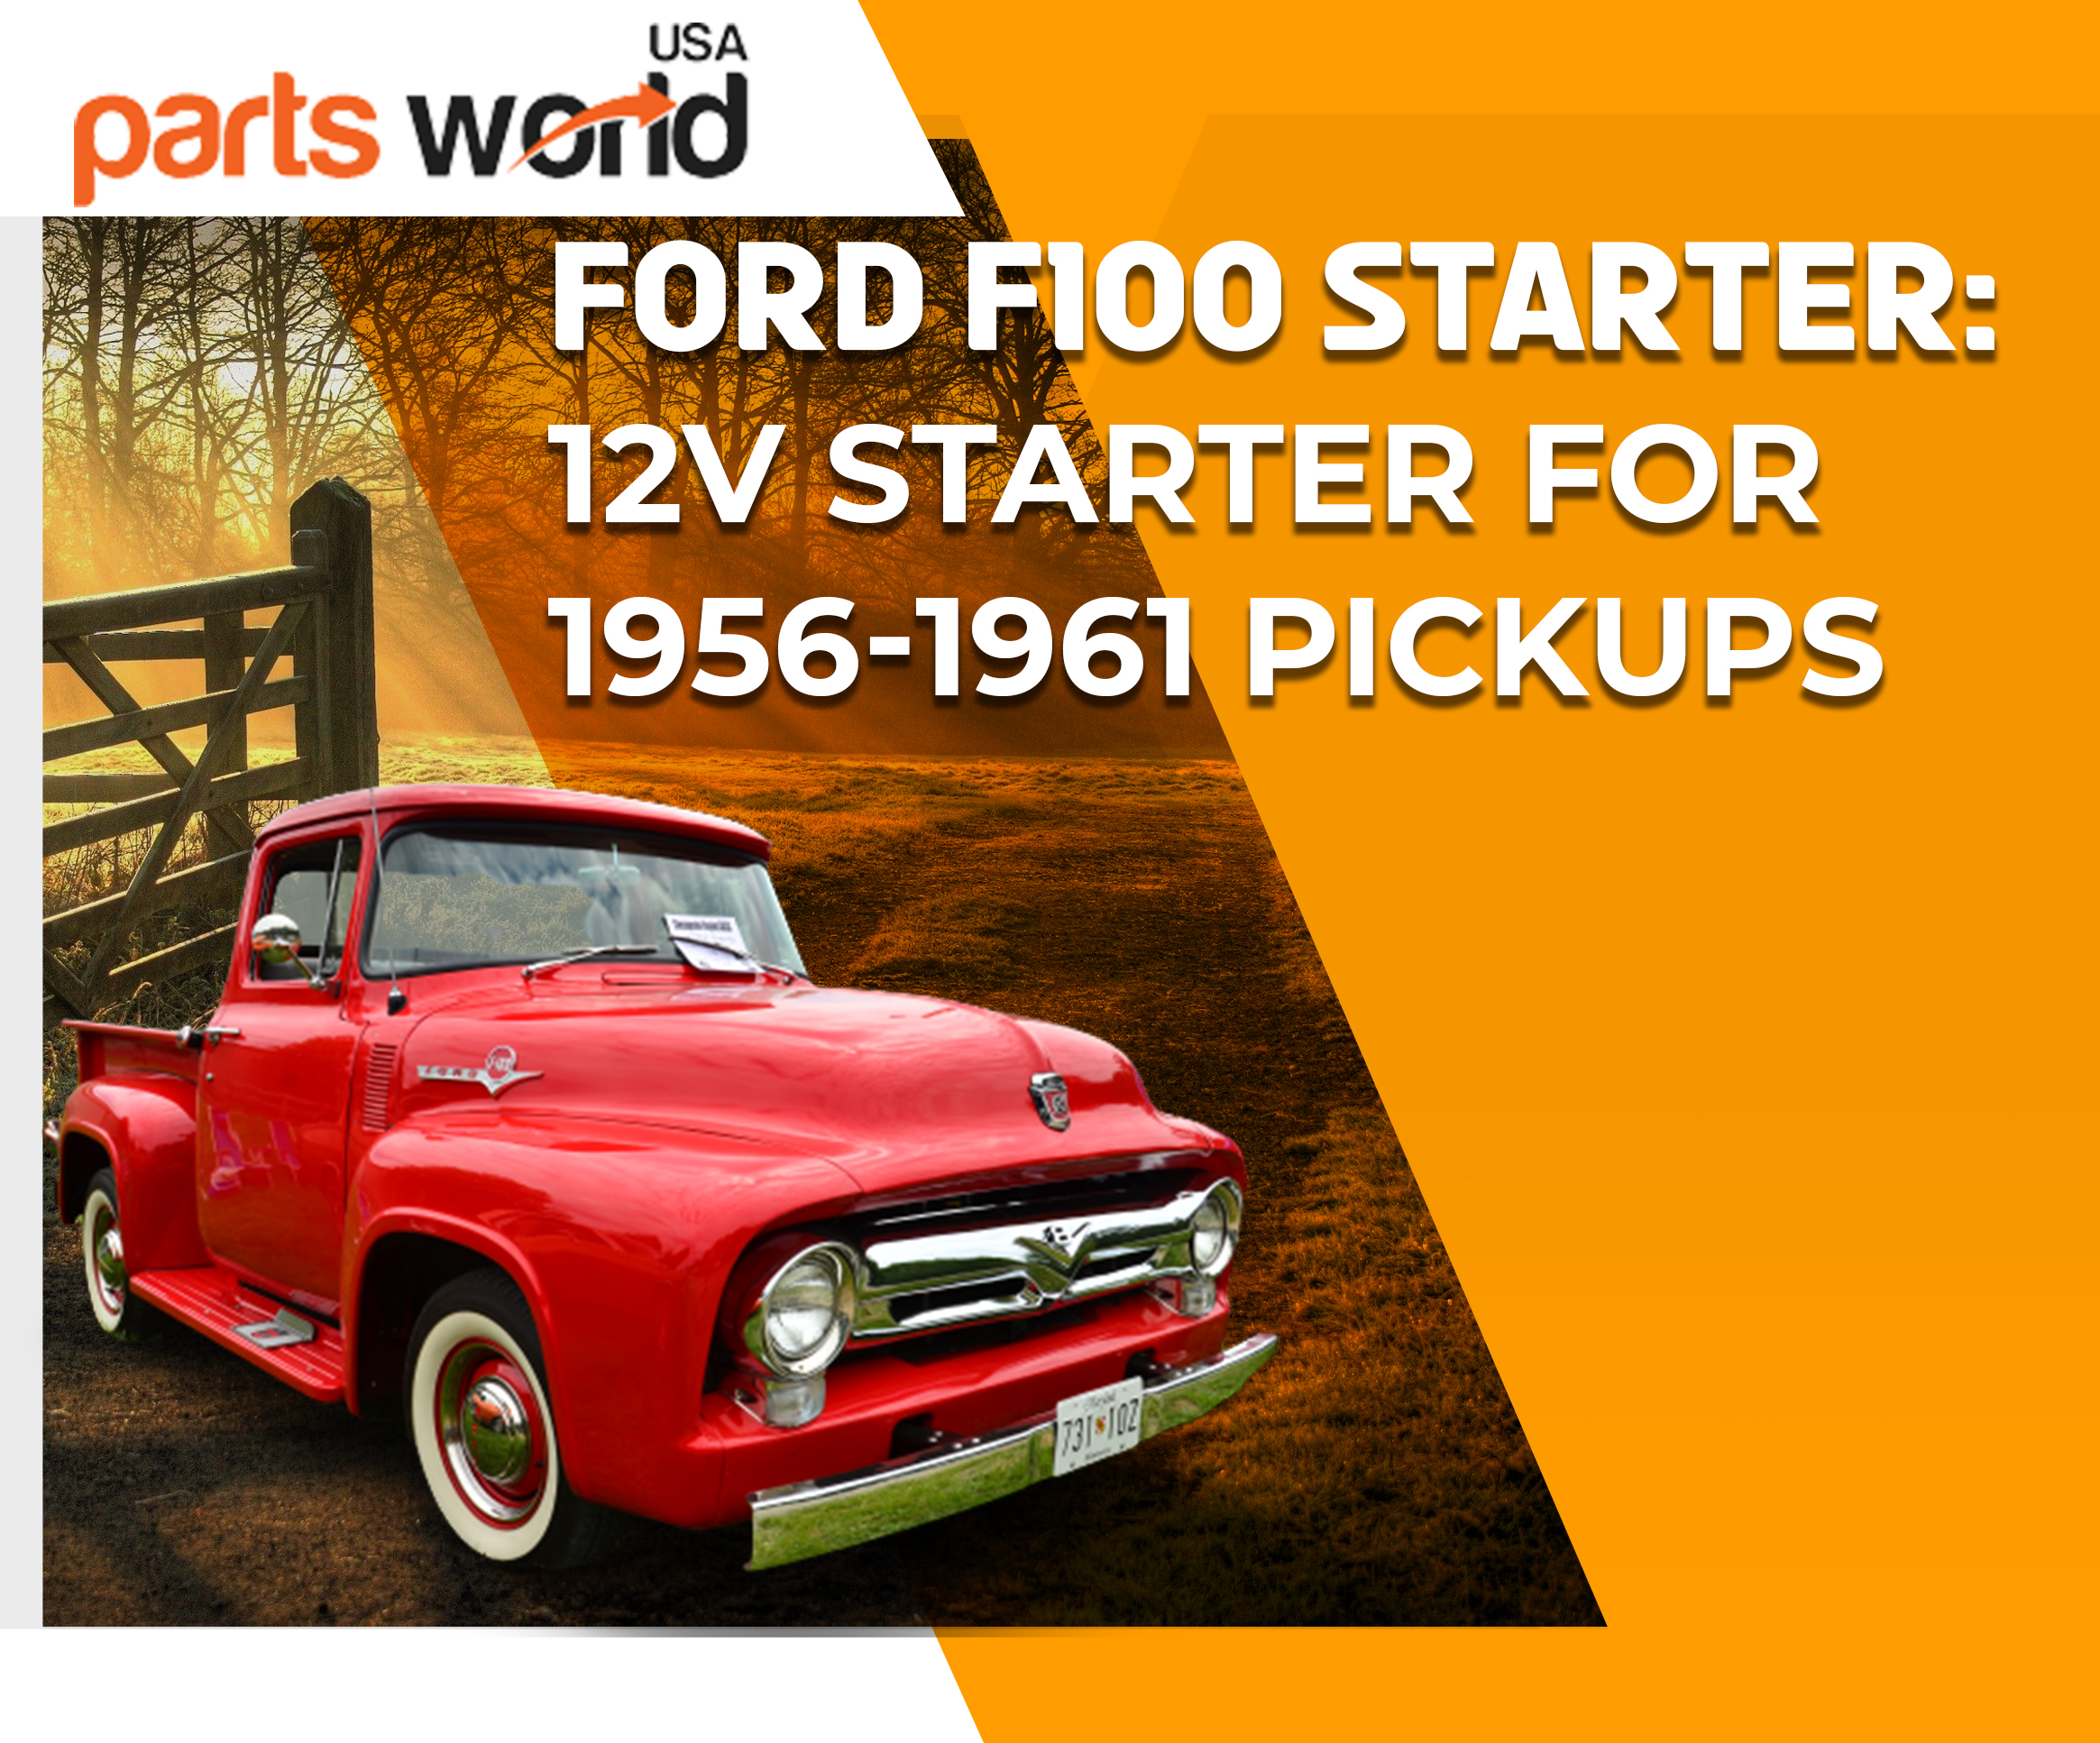 Ford F100 Starter: 12V Starter for 1956-1961 Pickups